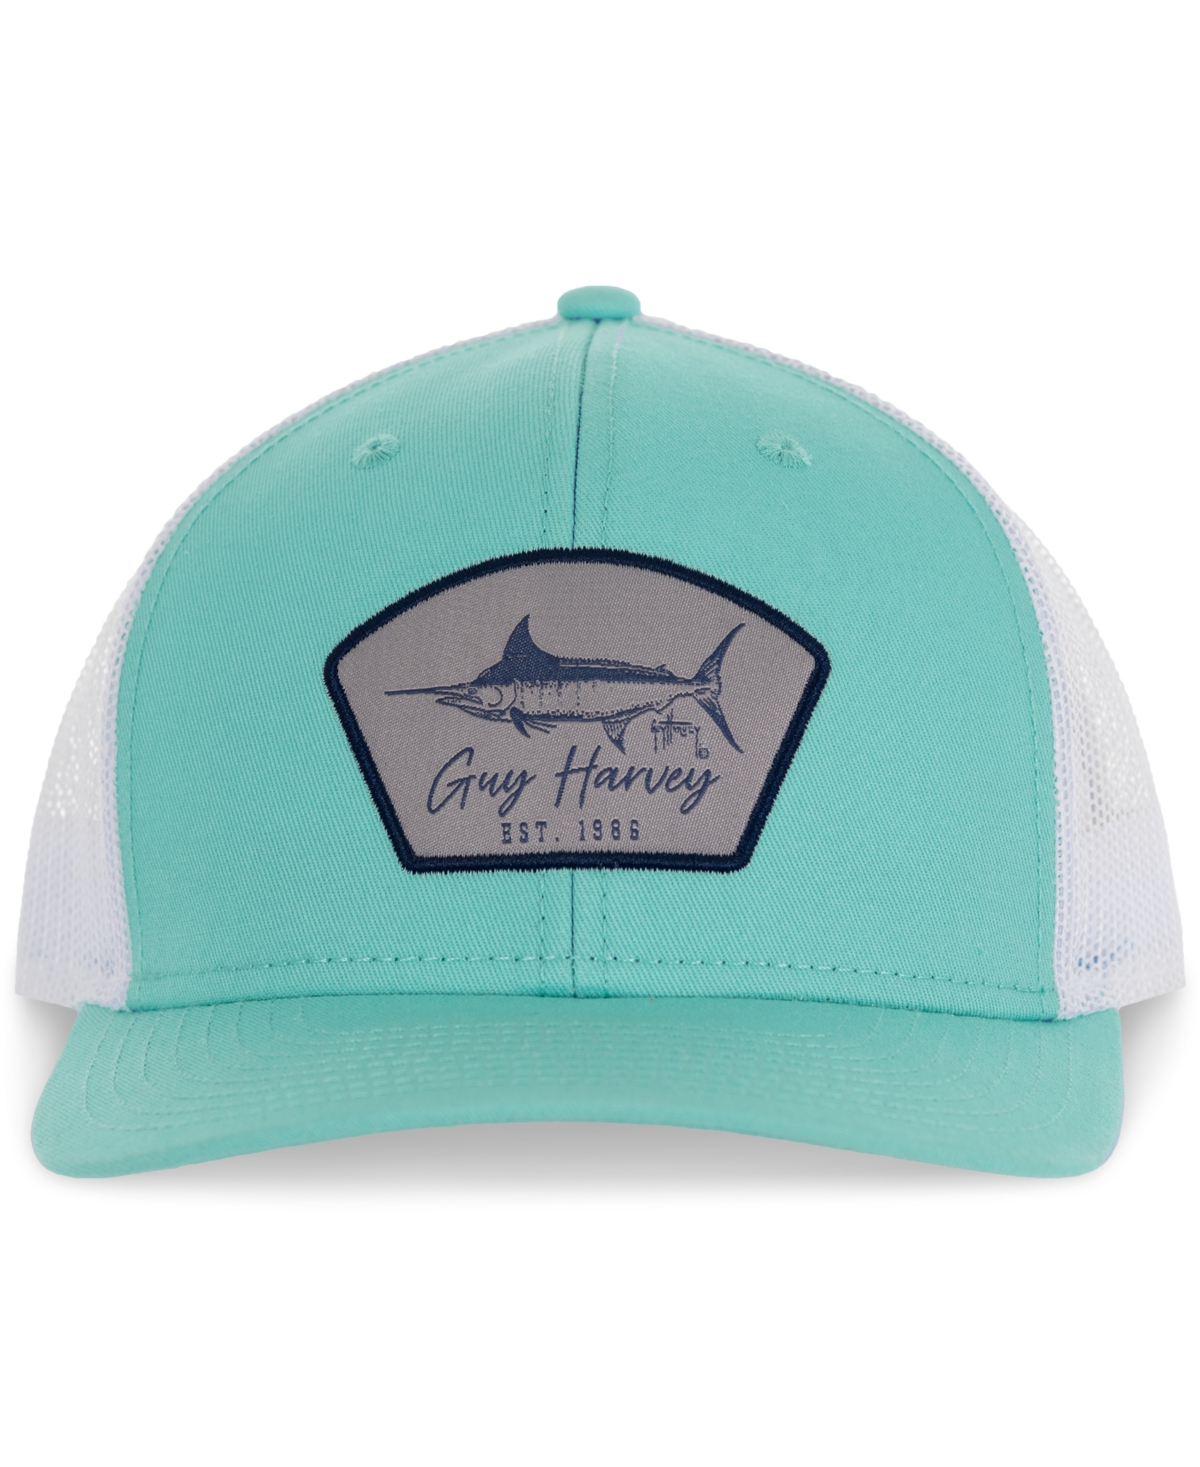 Guy Harvey Men's Cali Vibes Snapback Trucker Hat